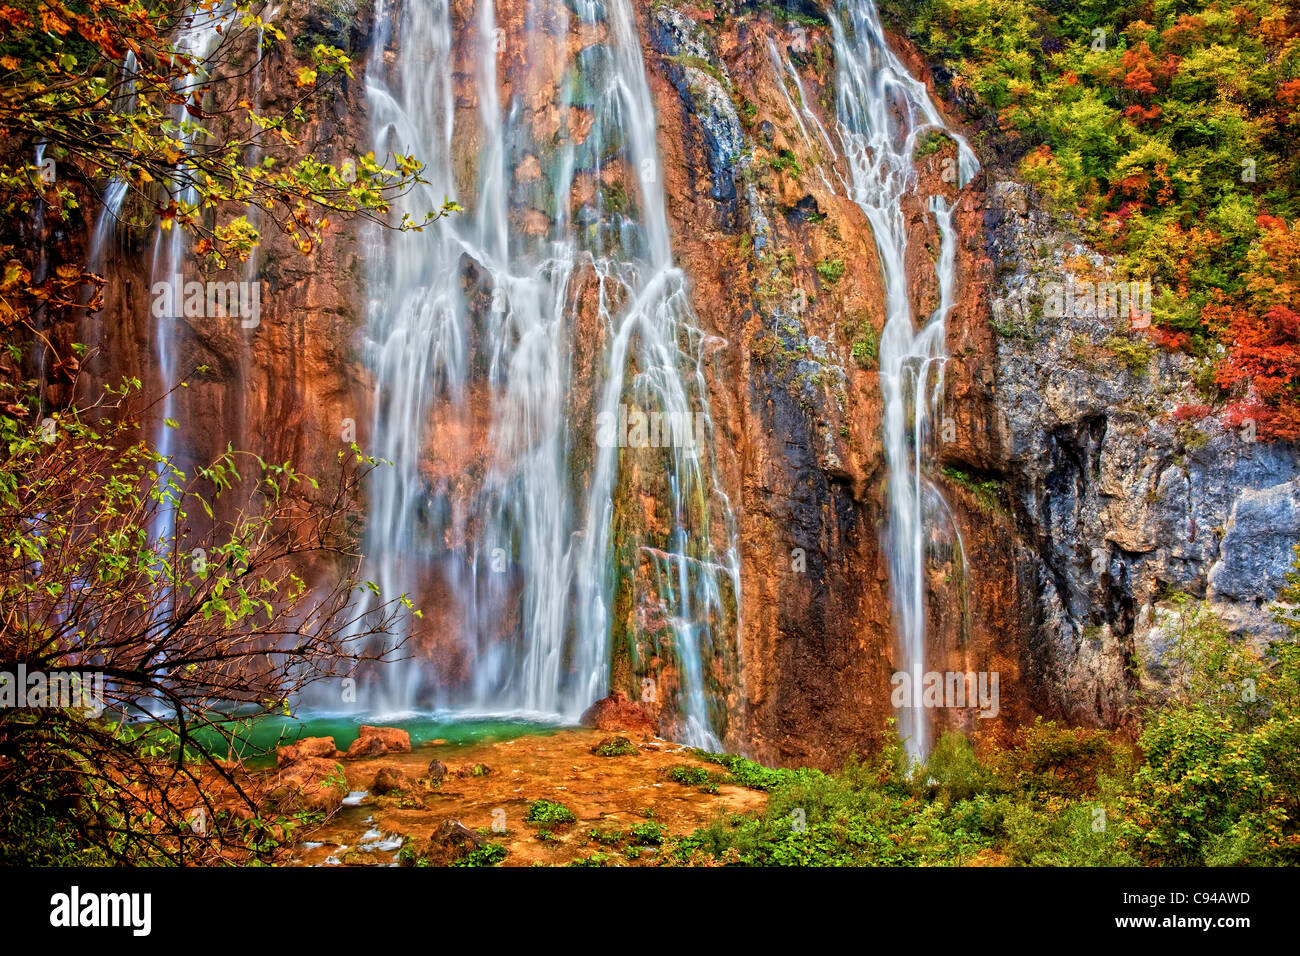 Pintoresca cascada espectacular en otoño paisaje del Parque Nacional de Los Lagos de Plitvice en Croacia Foto de stock